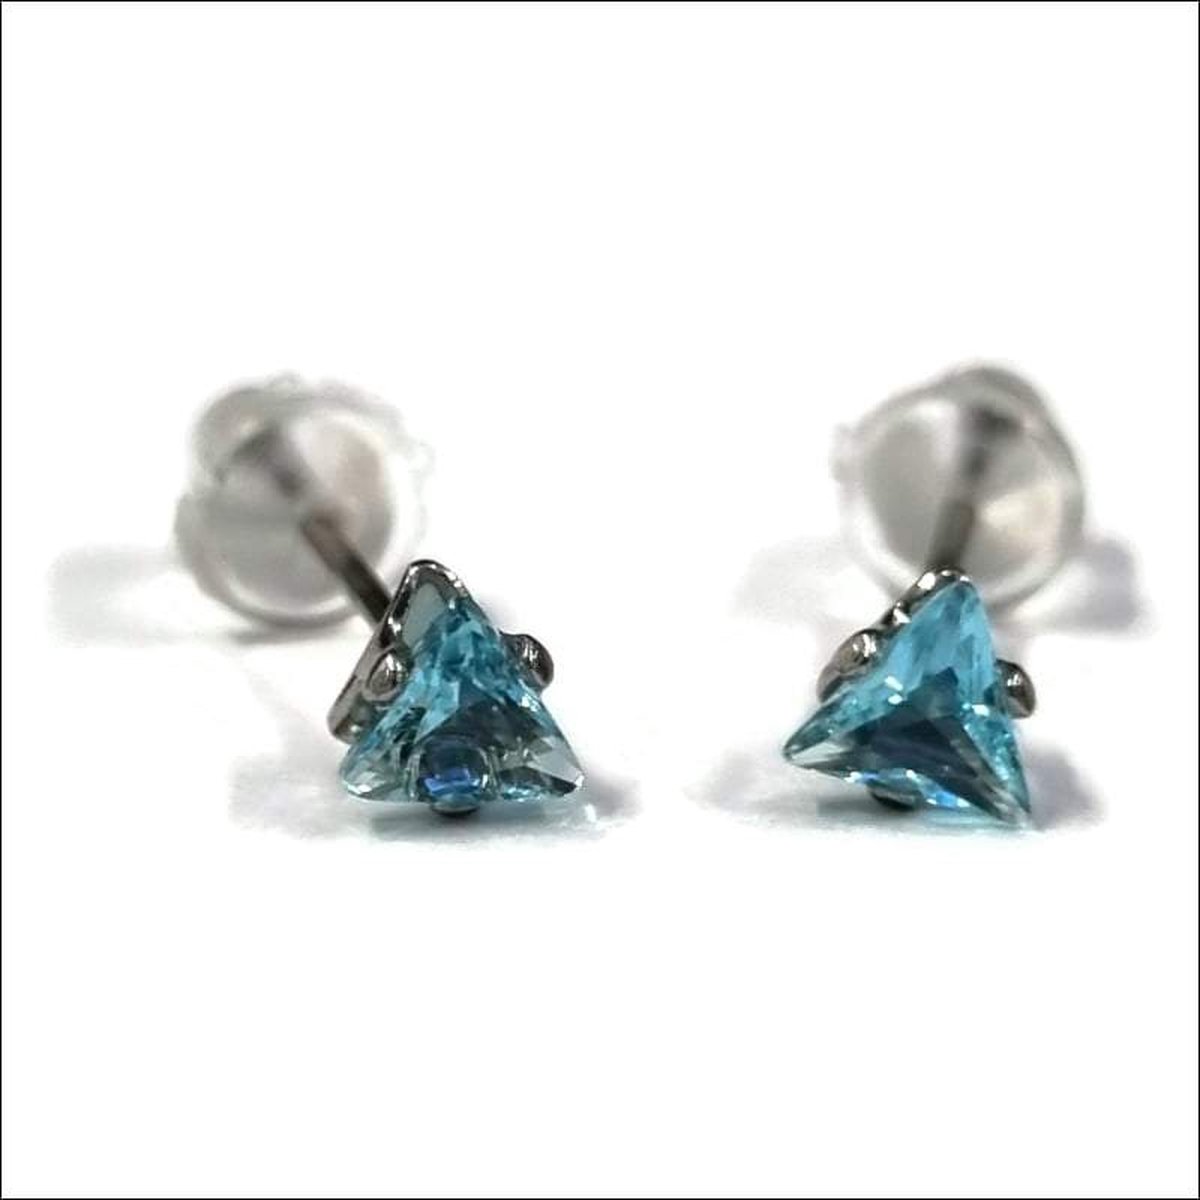 Aramat jewels ® - Zirkonia zweerknopjes driehoek 4mm oorbellen aqua blauw chirurgisch staal